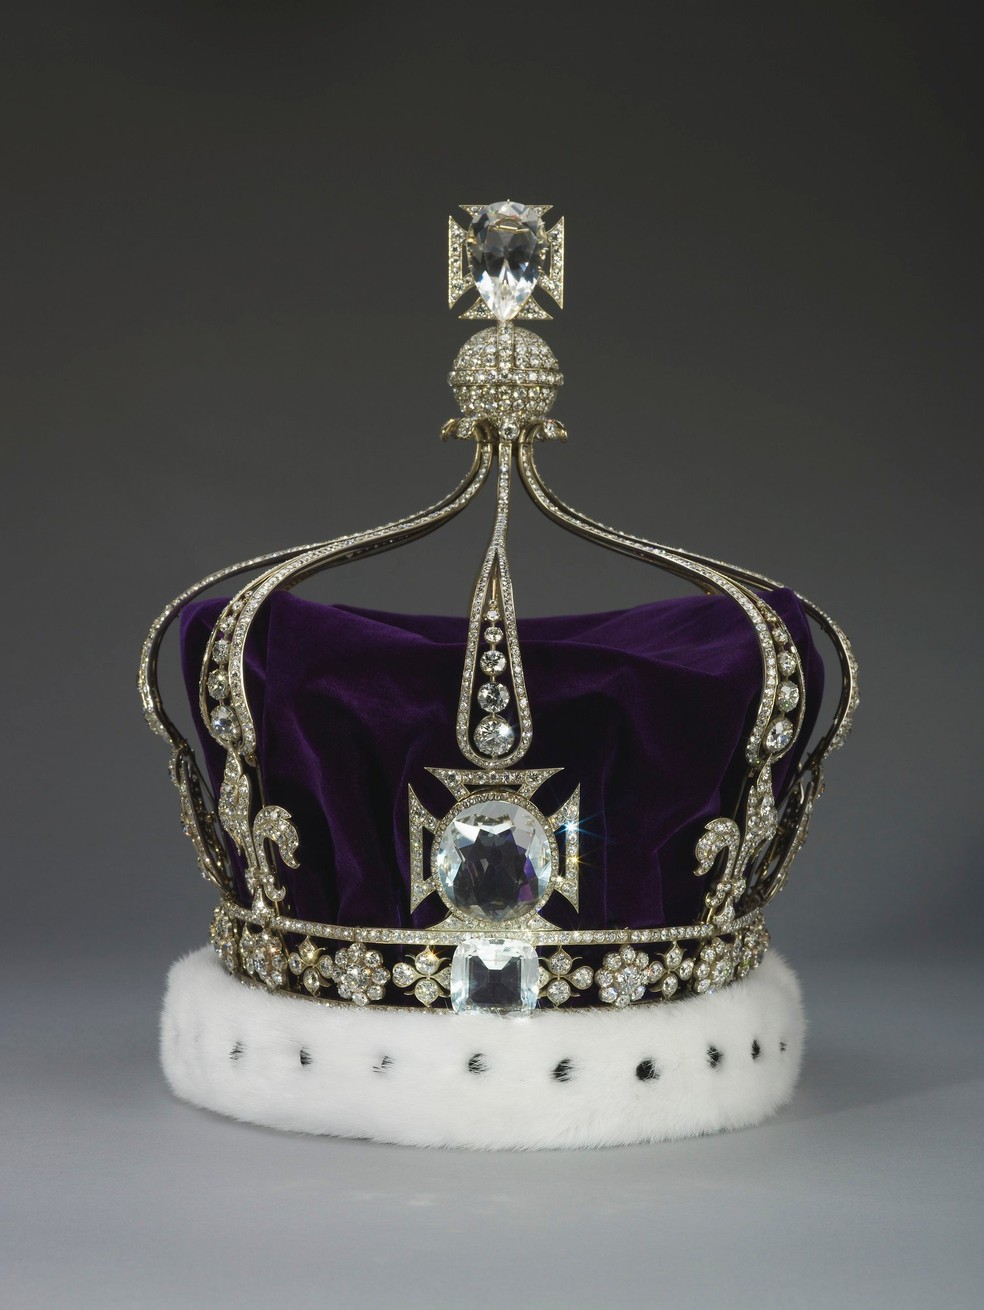 A Coroa da Rainha Mary foi escolhida pela Rainha Consorte para a Coroação — Foto: Divulgação 